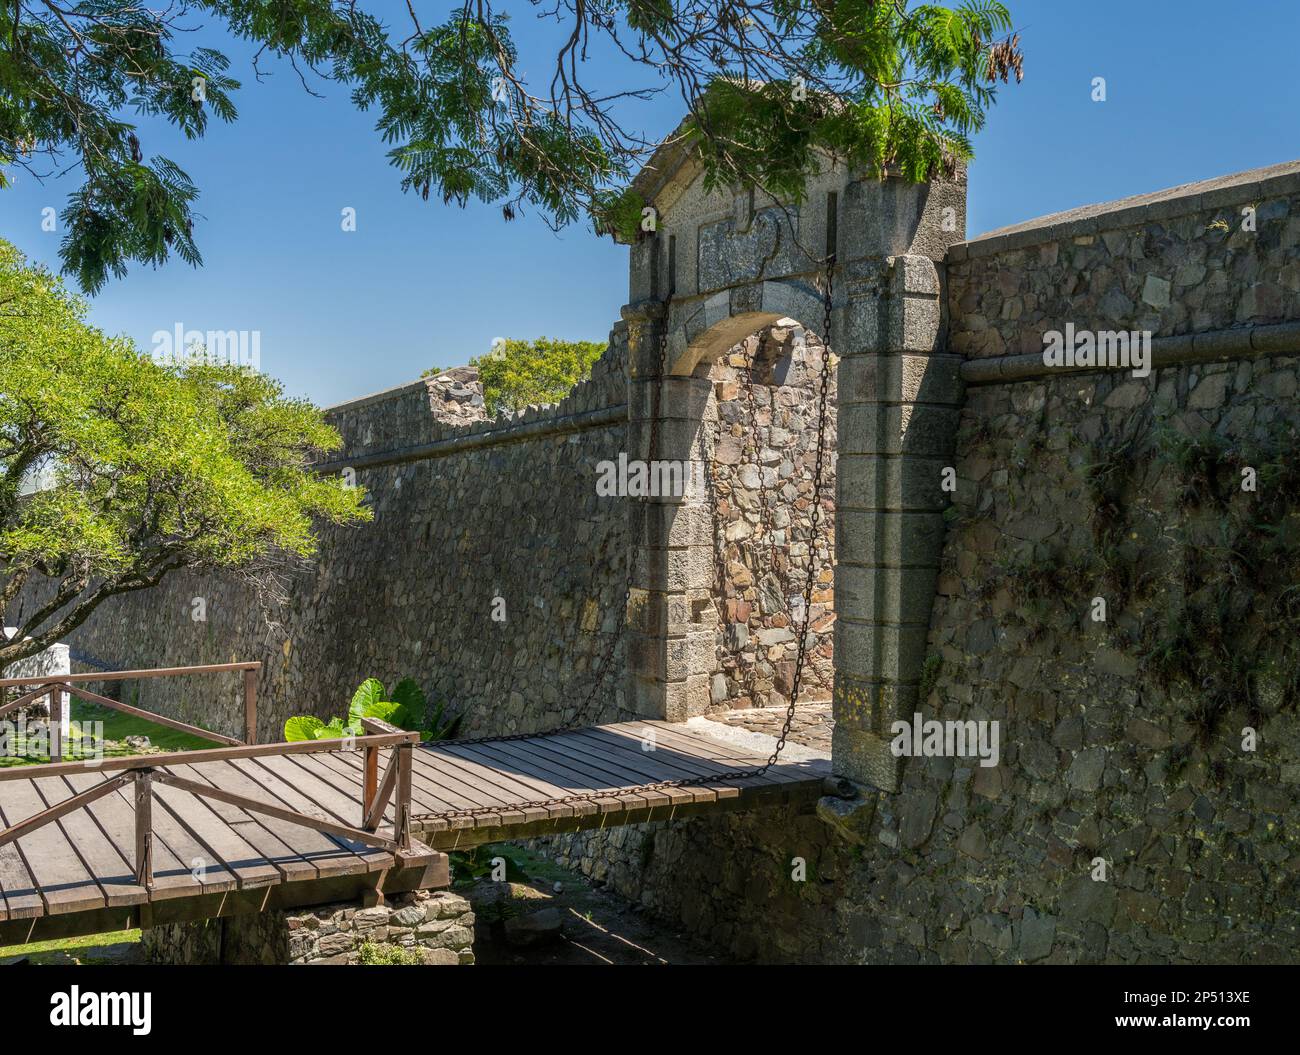 Arche de pierre et pont-plan menant à la ville de Colonia del Sacramento, au patrimoine mondial de l'UNESCO Banque D'Images